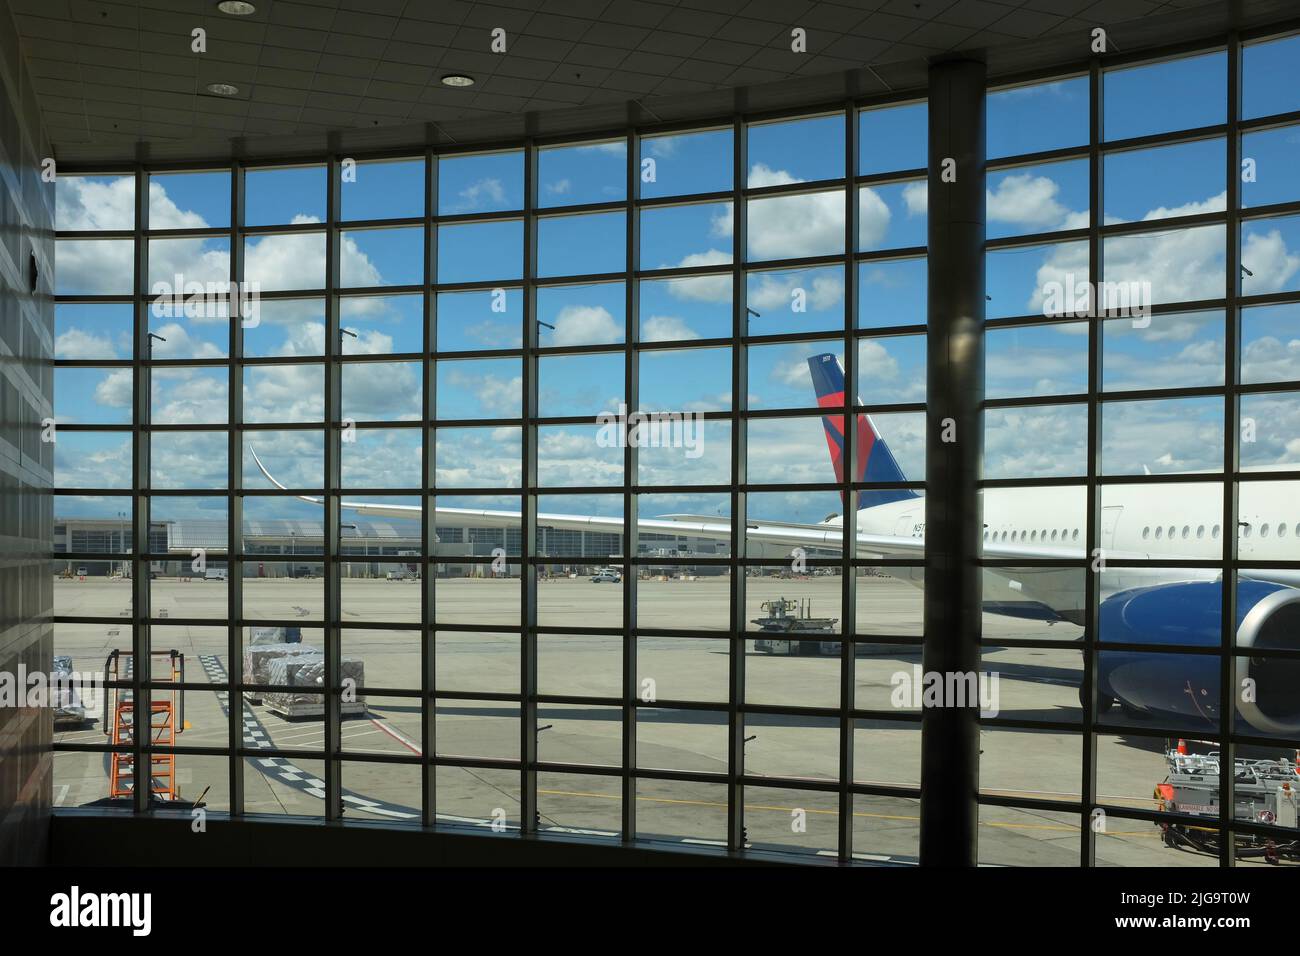 DETROIT, MICHIGAN - 22. JUN. 2021: Fenster und Flugzeug am Detroit Metropolitan Wayne County Airport (DTW), einem großen internationalen Flughafen in den Vereinigten Staaten Stockfoto